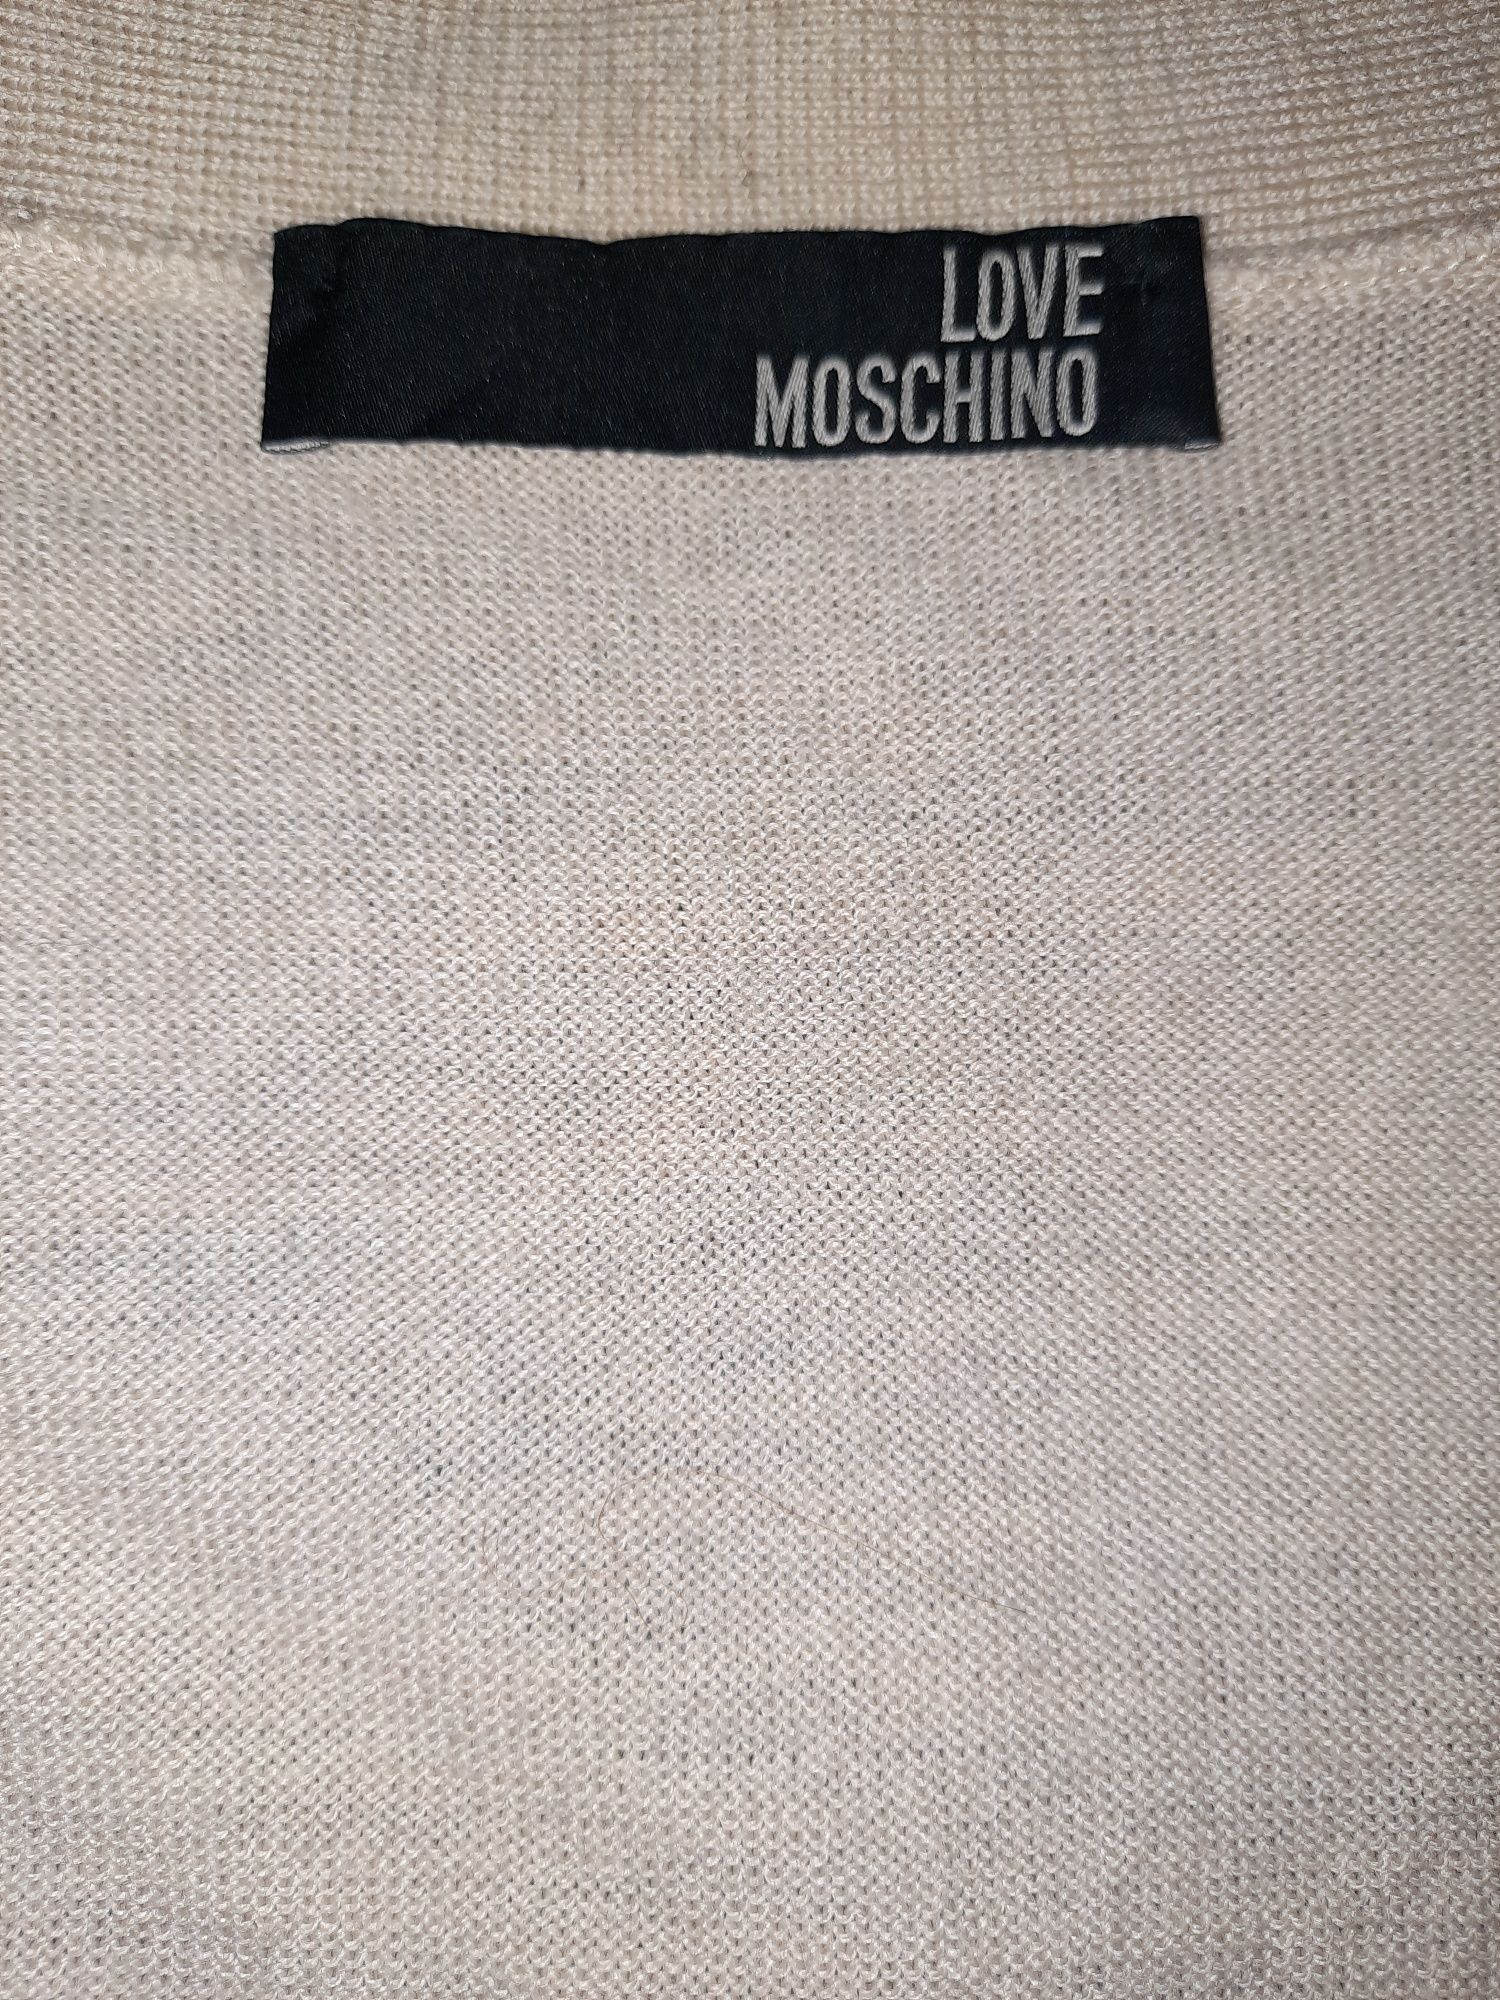 Damska bluzka Love Moschino z delikatnej wełny merino